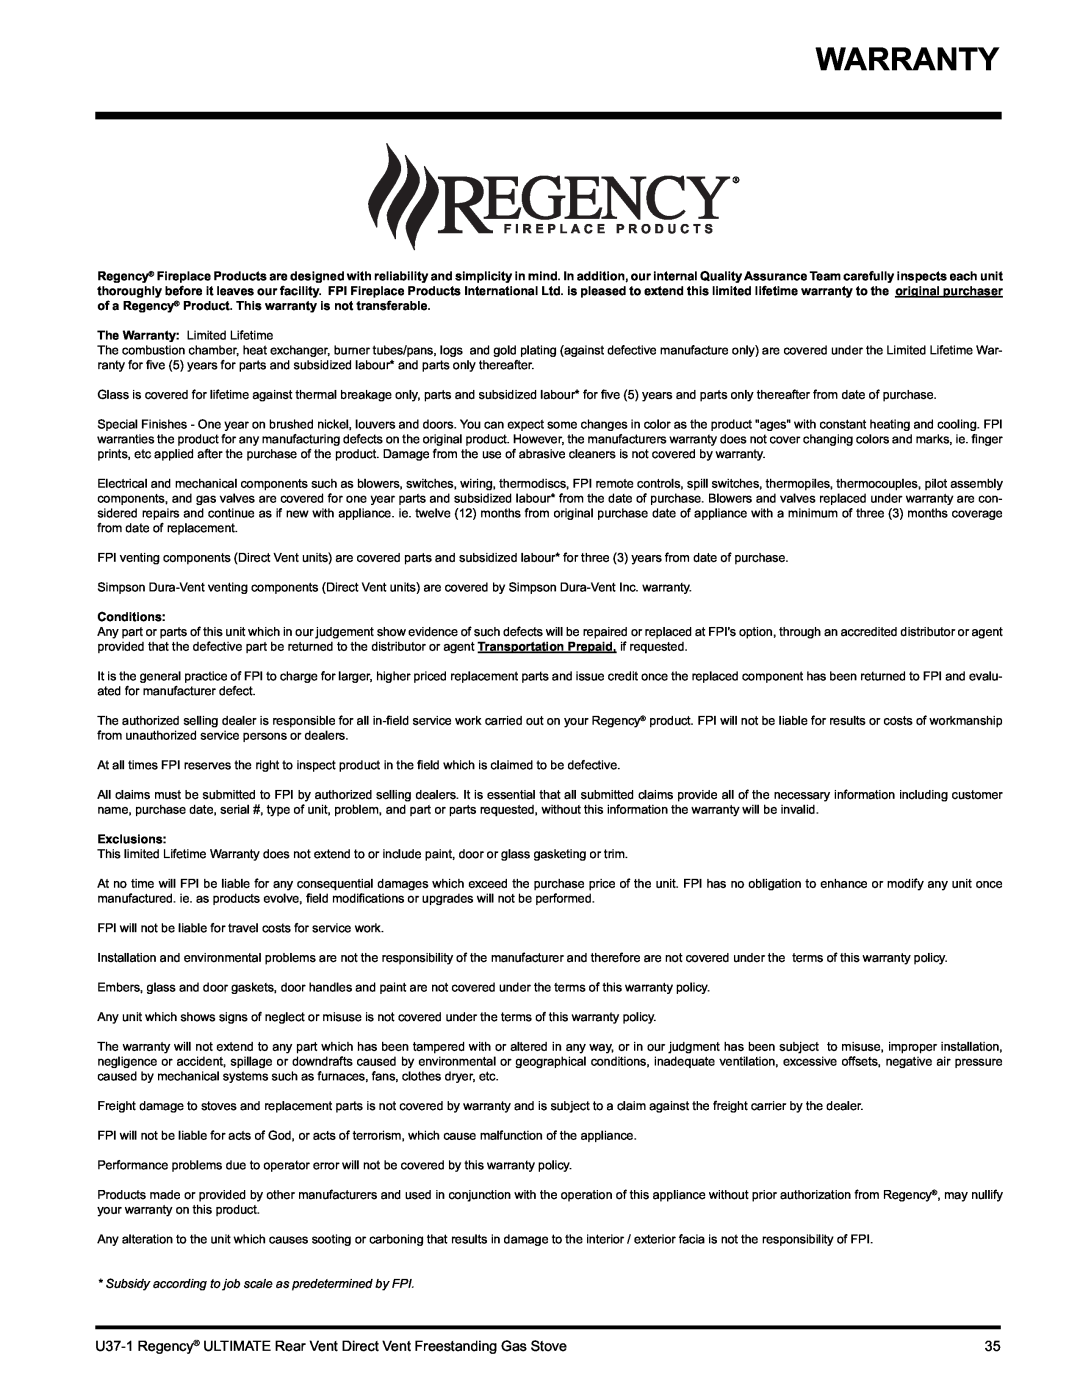 Regency U37-NG1, U37-LP1 installation manual Warranty, Conditions, Exclusions 